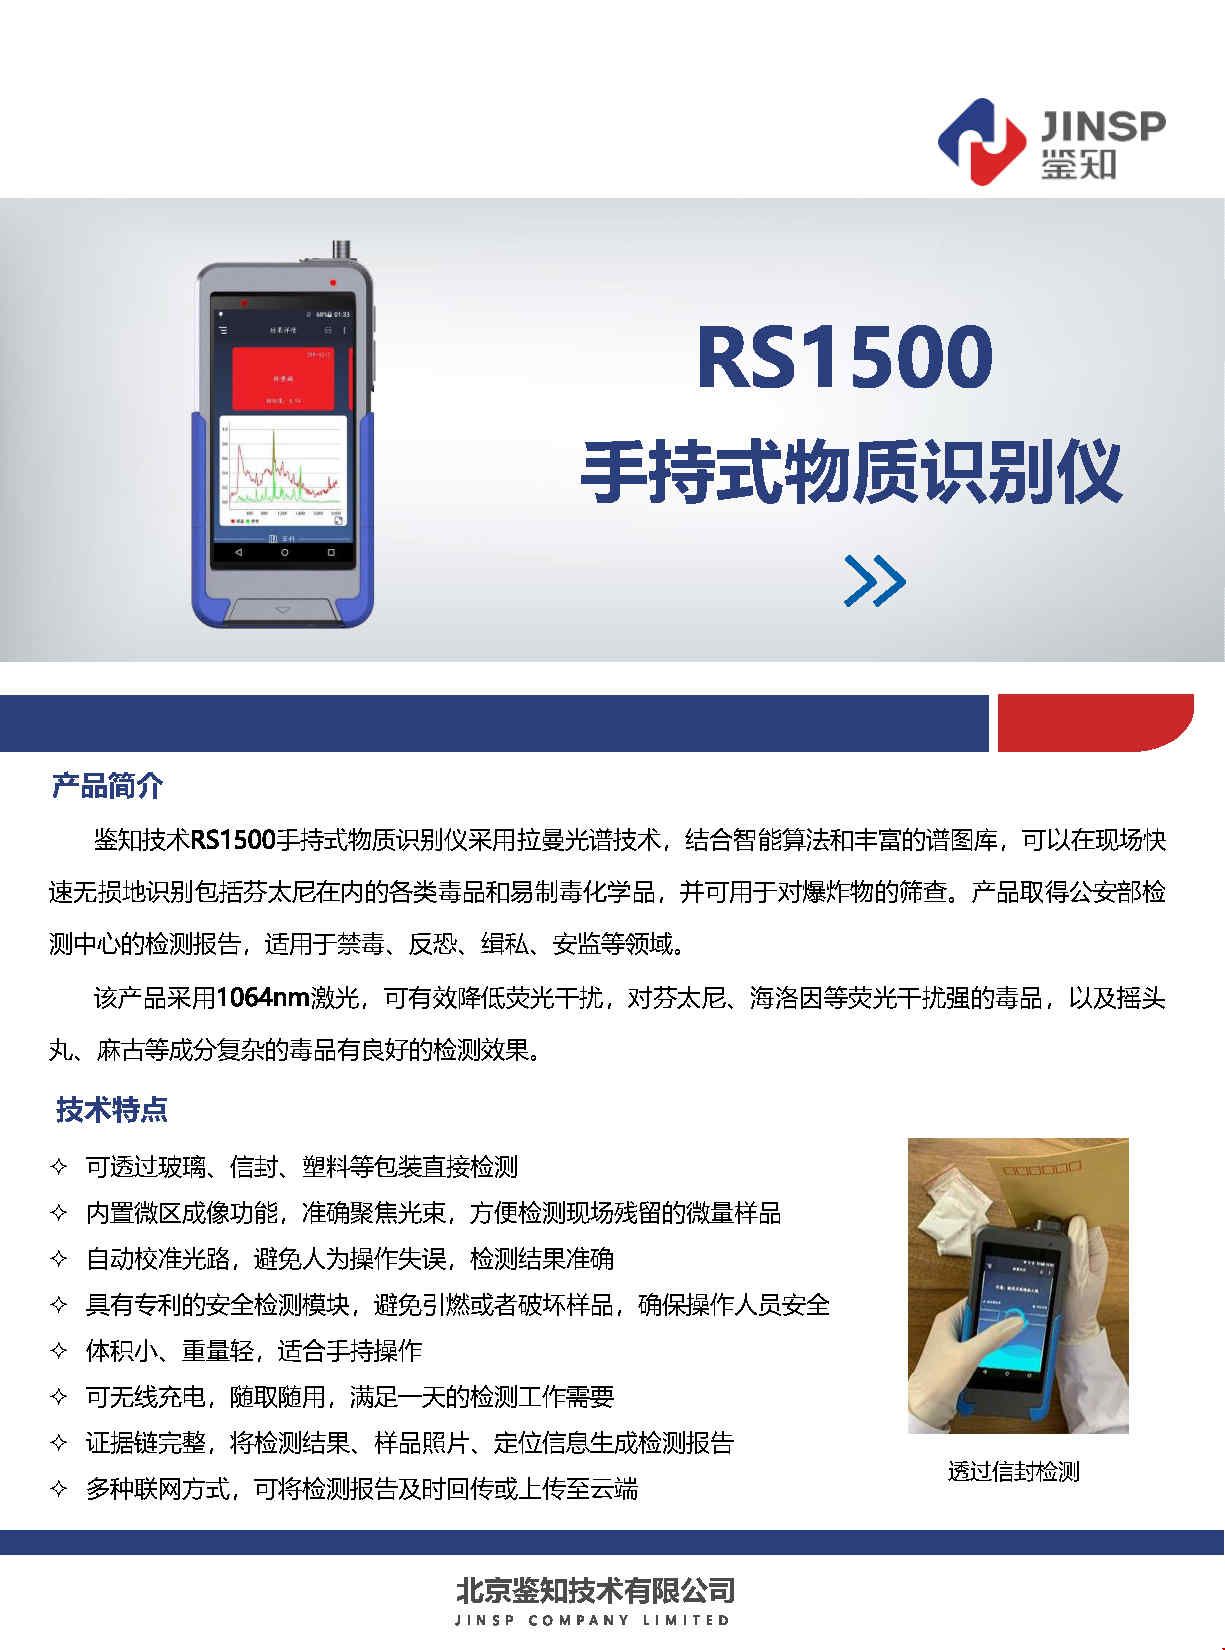 RS1500 手持式物质识别仪-毒品版-高清版-1_Page1.jpg